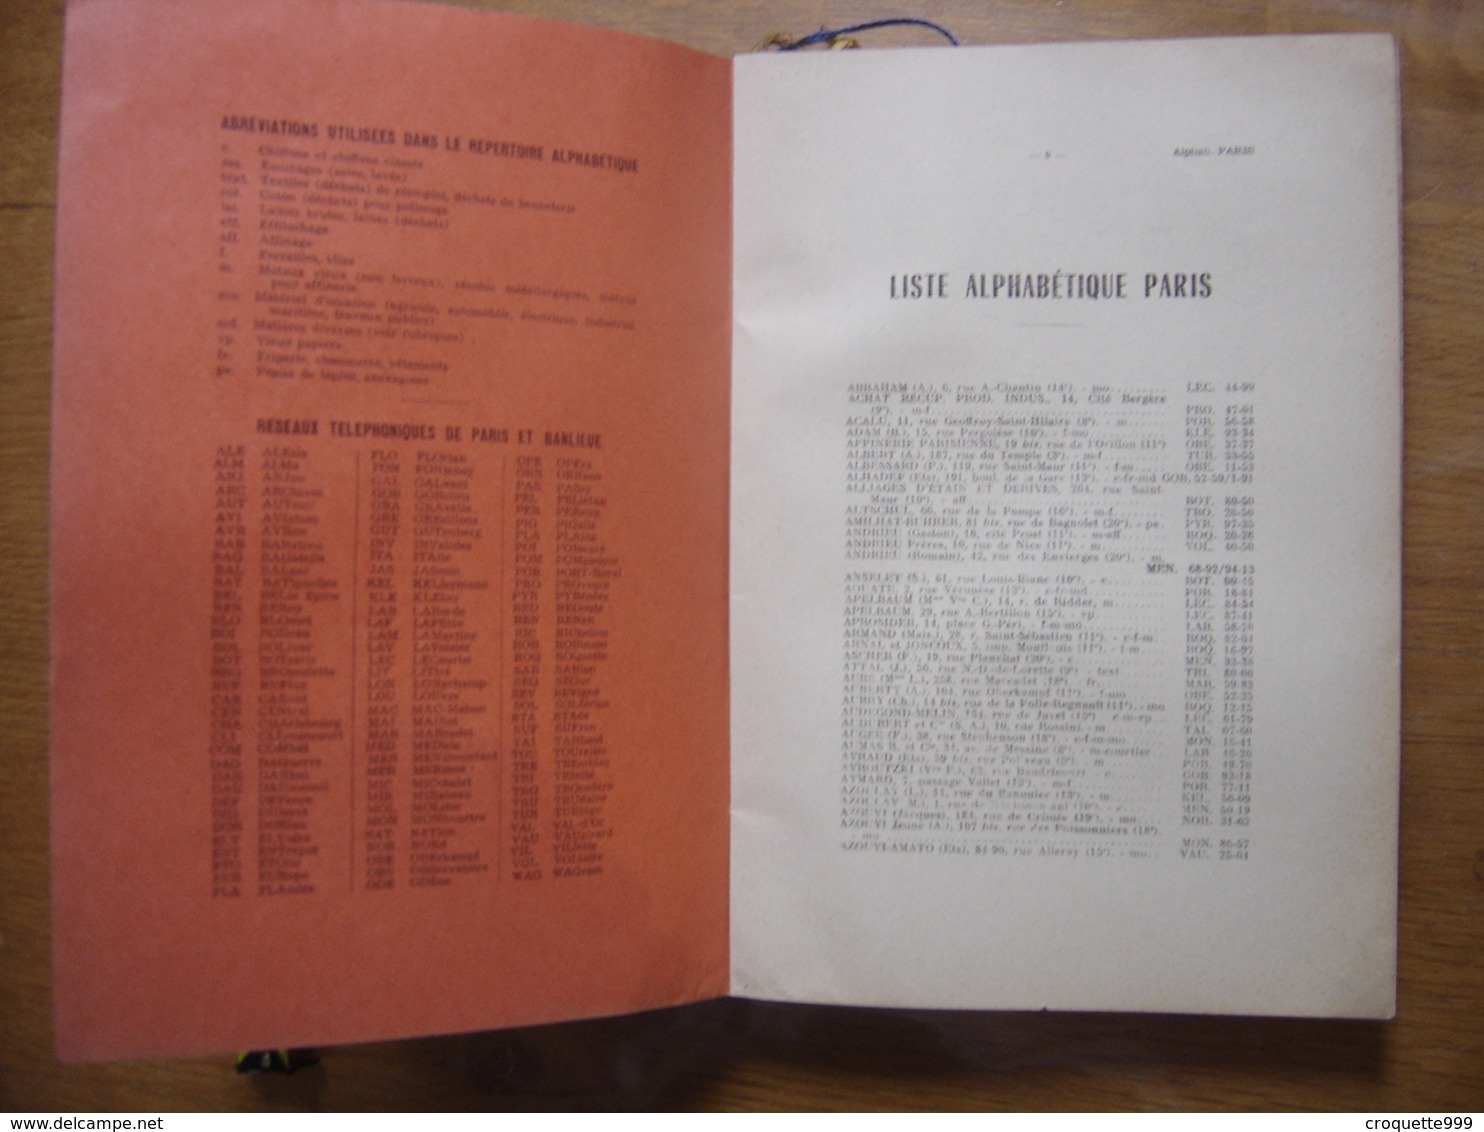 1962 ANNUAIRE National Des MATIERES PREMIERES De RECUPERATION Et Du MATERIEL D'OCCASION - Directorios Telefónicos